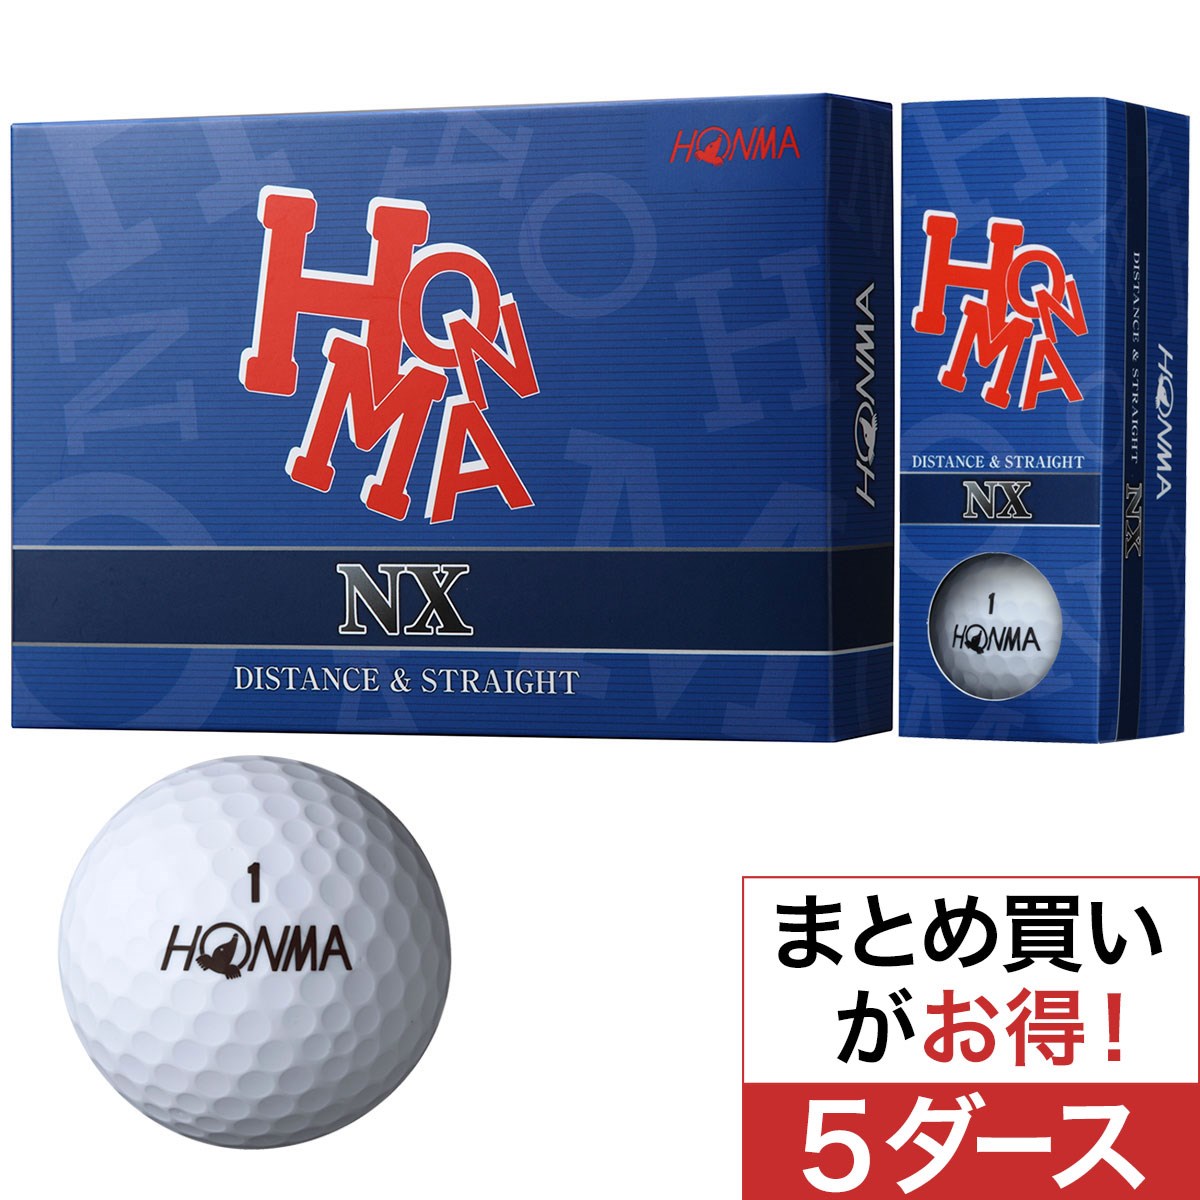 本間ゴルフ(HONMA GOLF) NX ボール 5ダースセット 